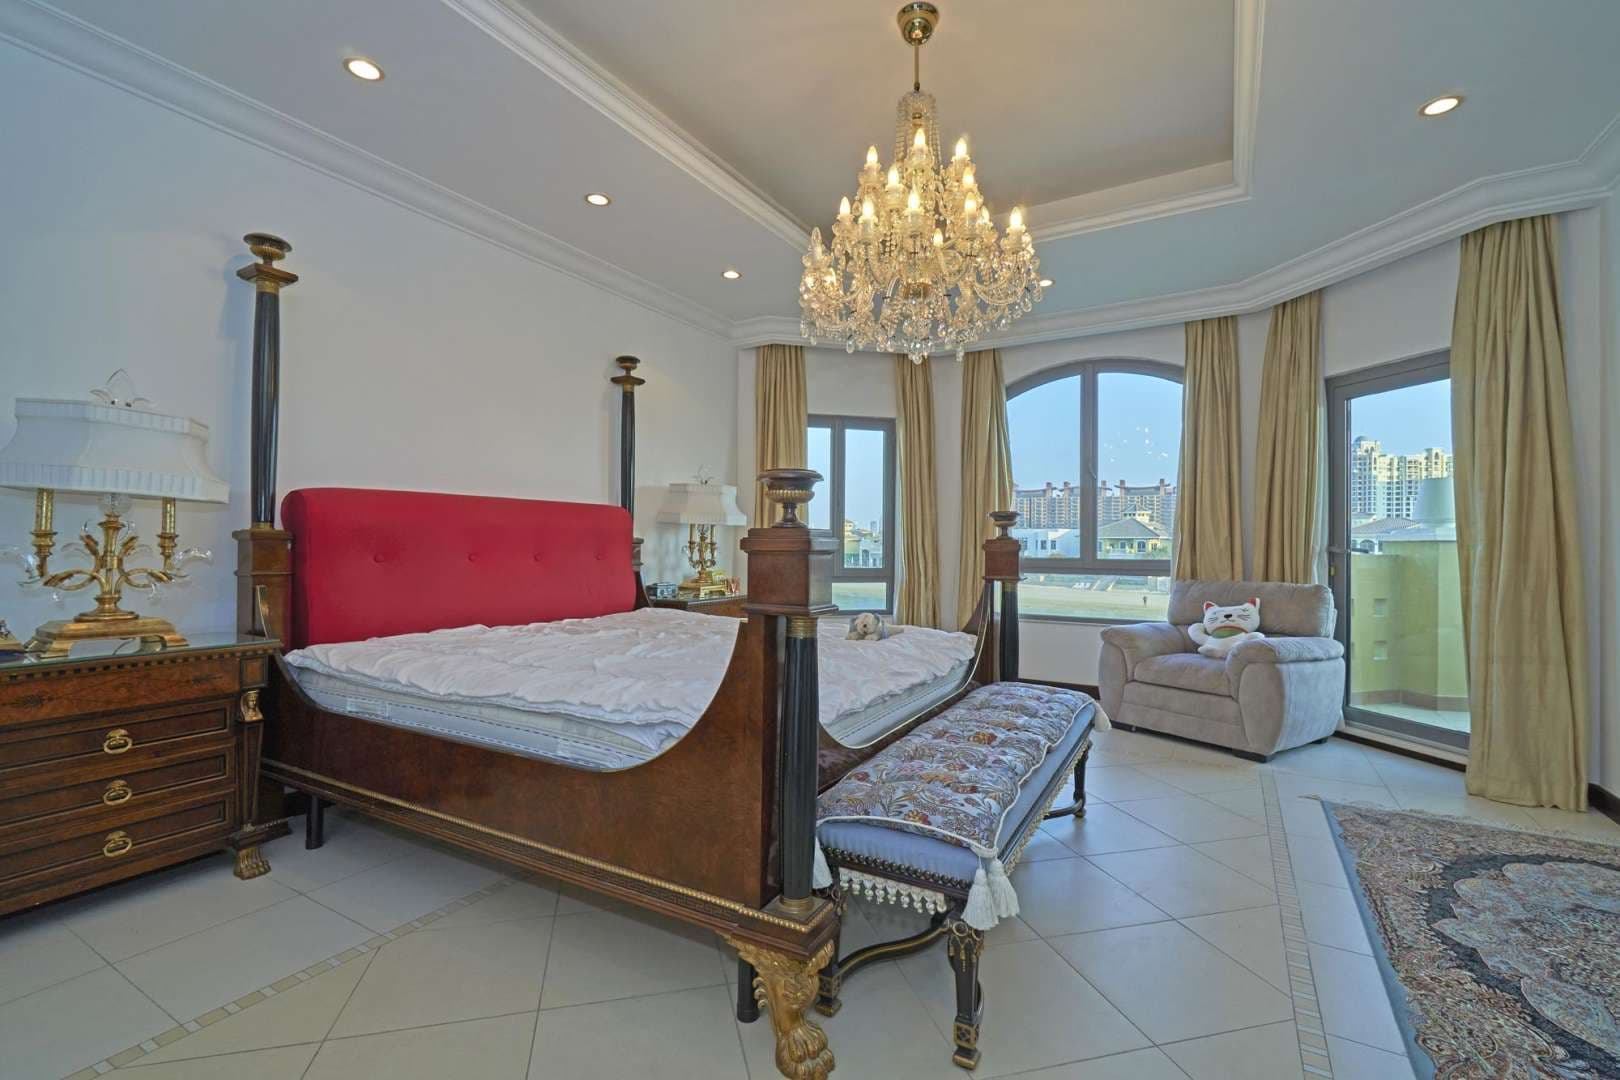 4 Bedroom Villa For Rent Garden Homes Lp05387 1c09421566d13400.jpg